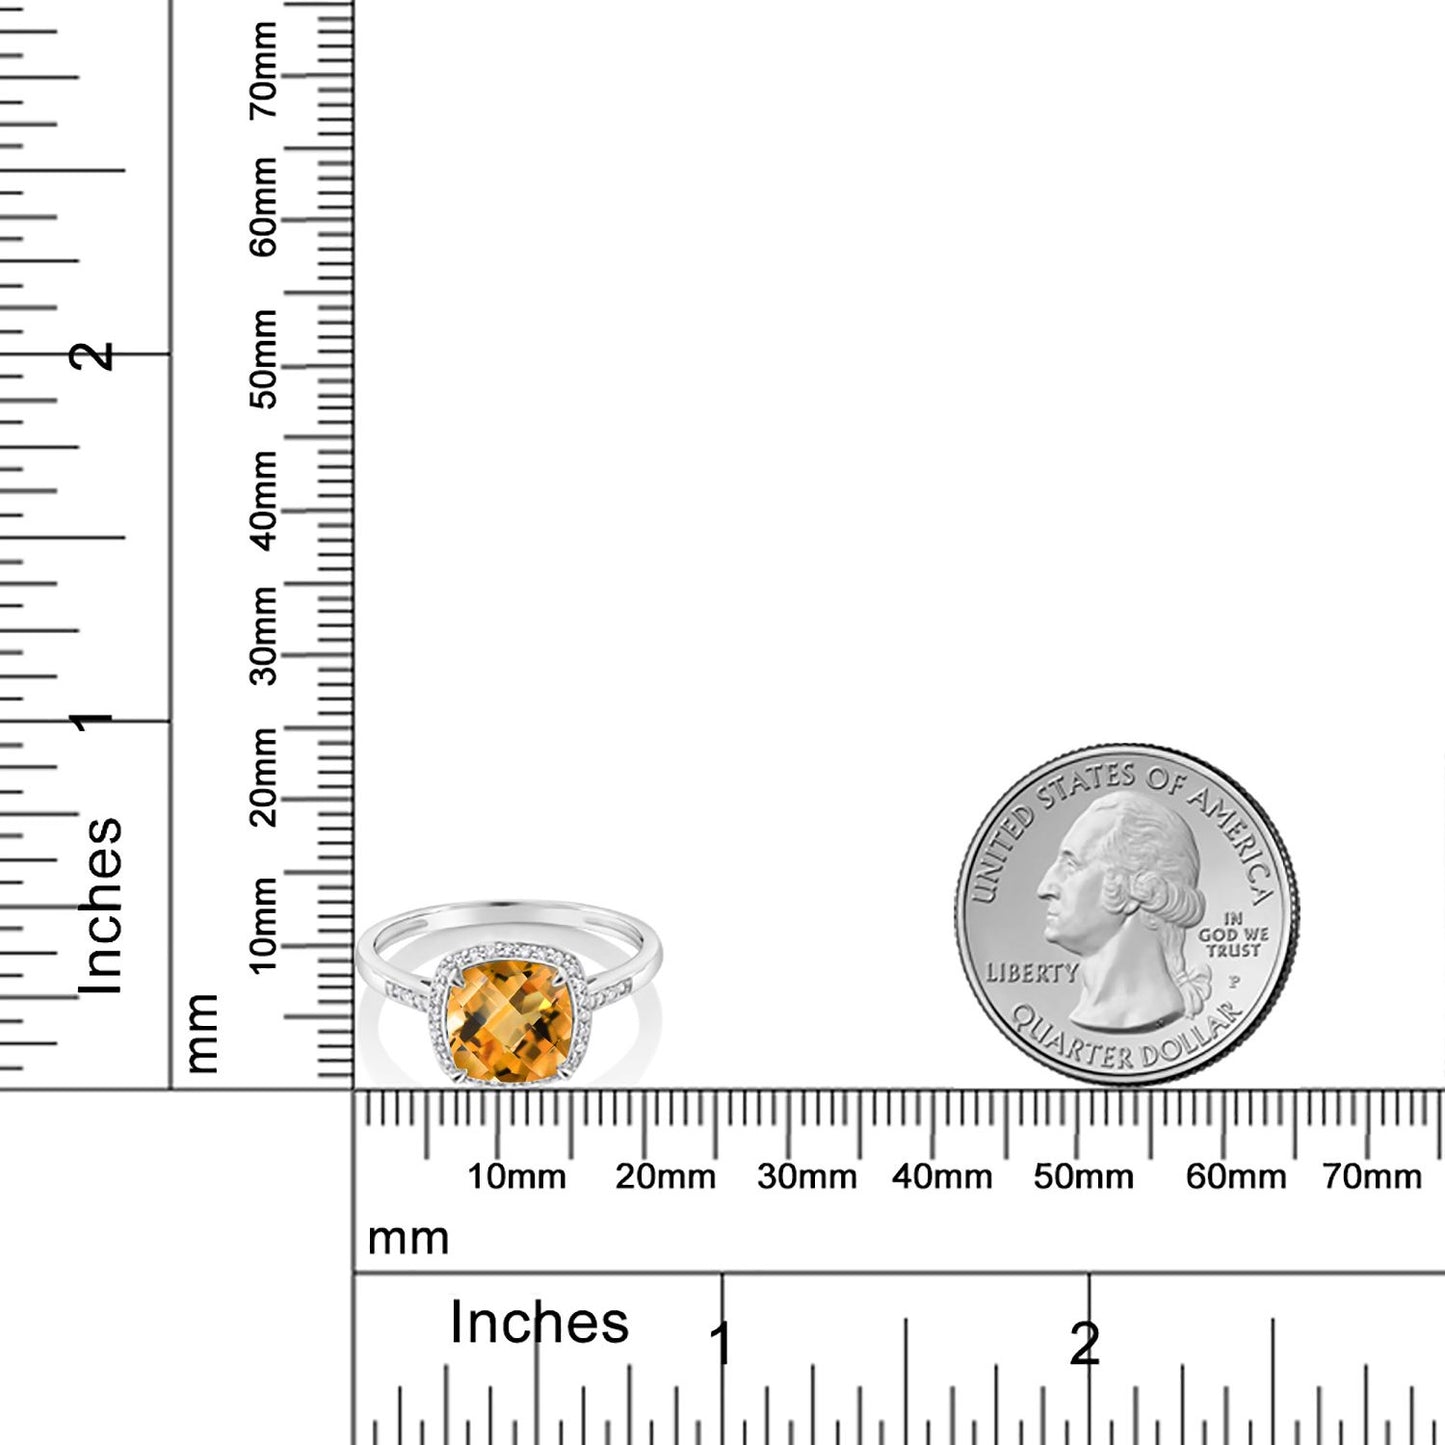 2.25カラット  天然 シトリン リング 指輪  天然 ダイヤモンド 10金 ホワイトゴールド K10  11月 誕生石